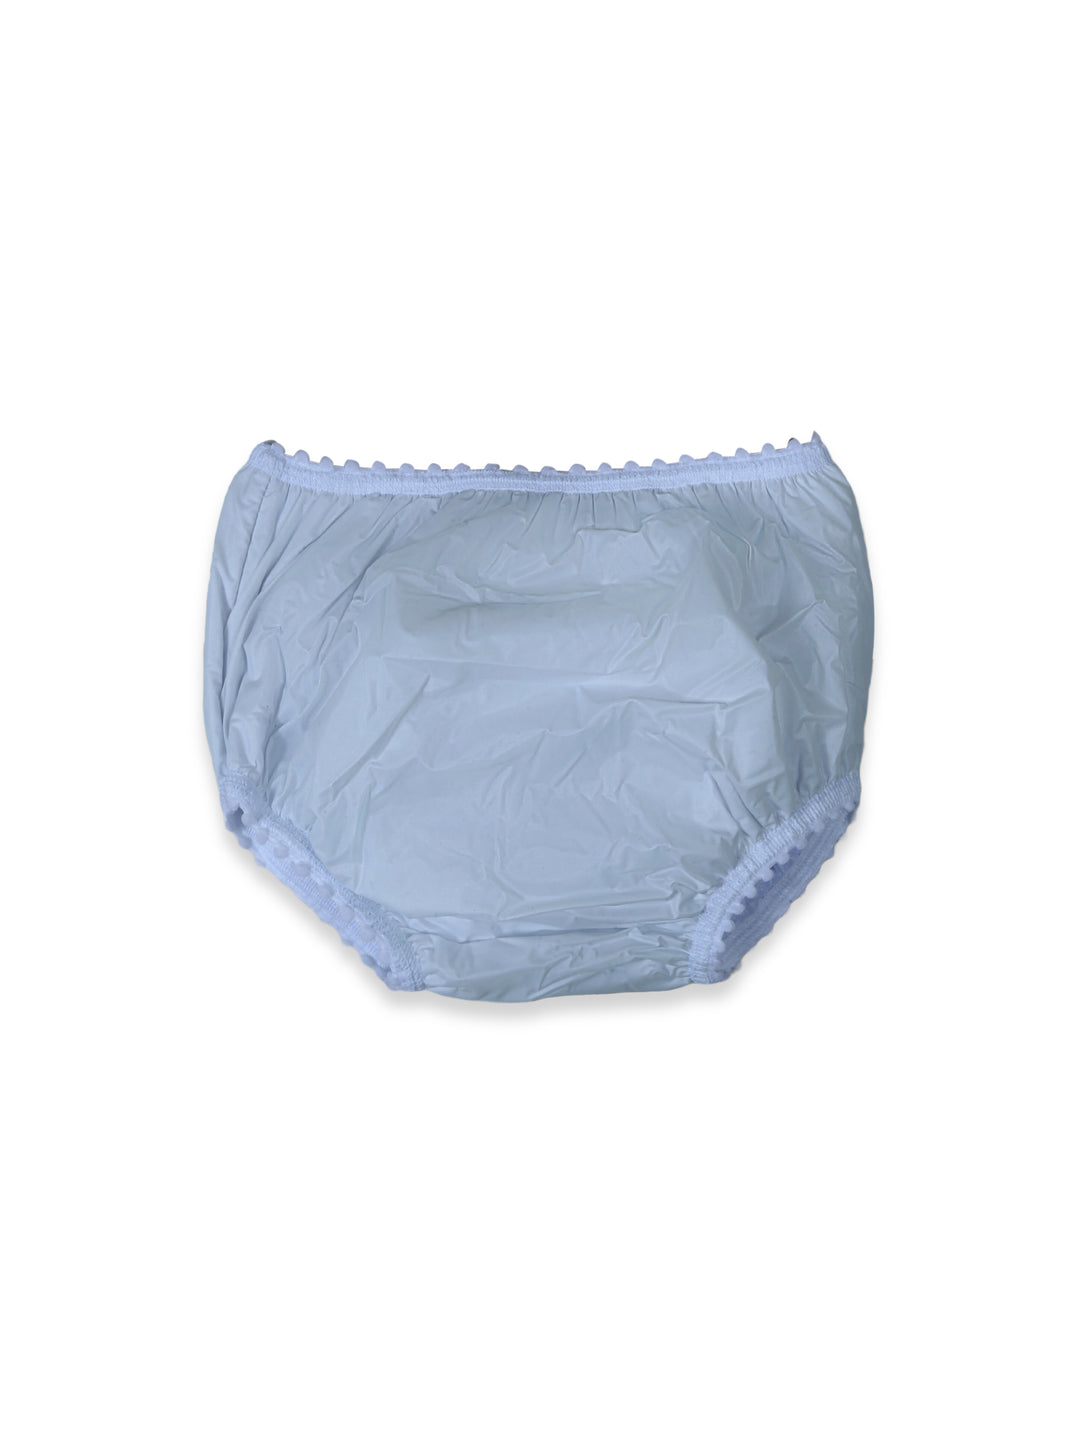 Sebi Baby Towel Panty #8806 (W-22)